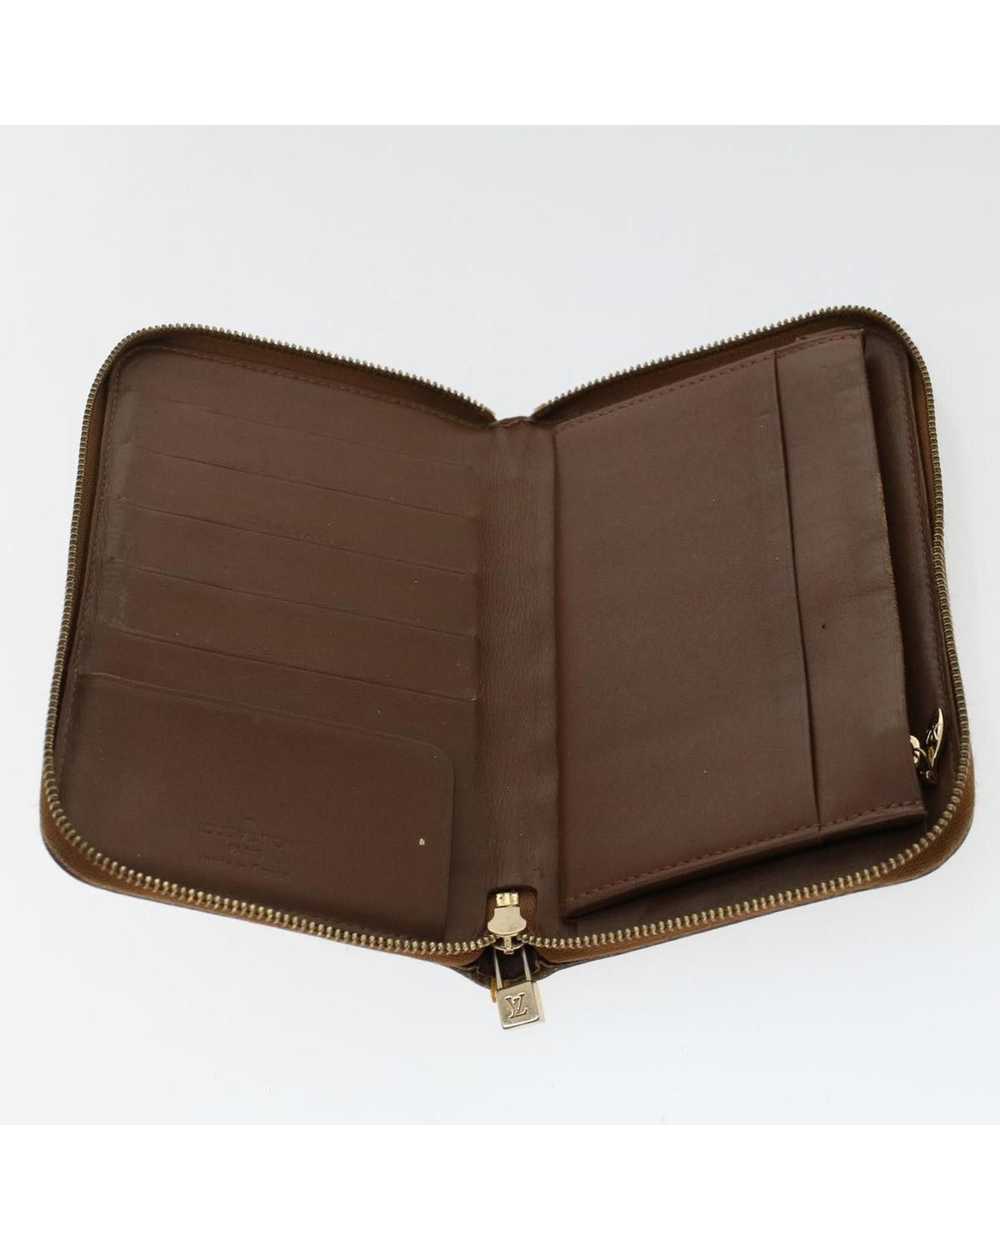 Louis Vuitton Bronze Patent Leather Long Wallet - image 8